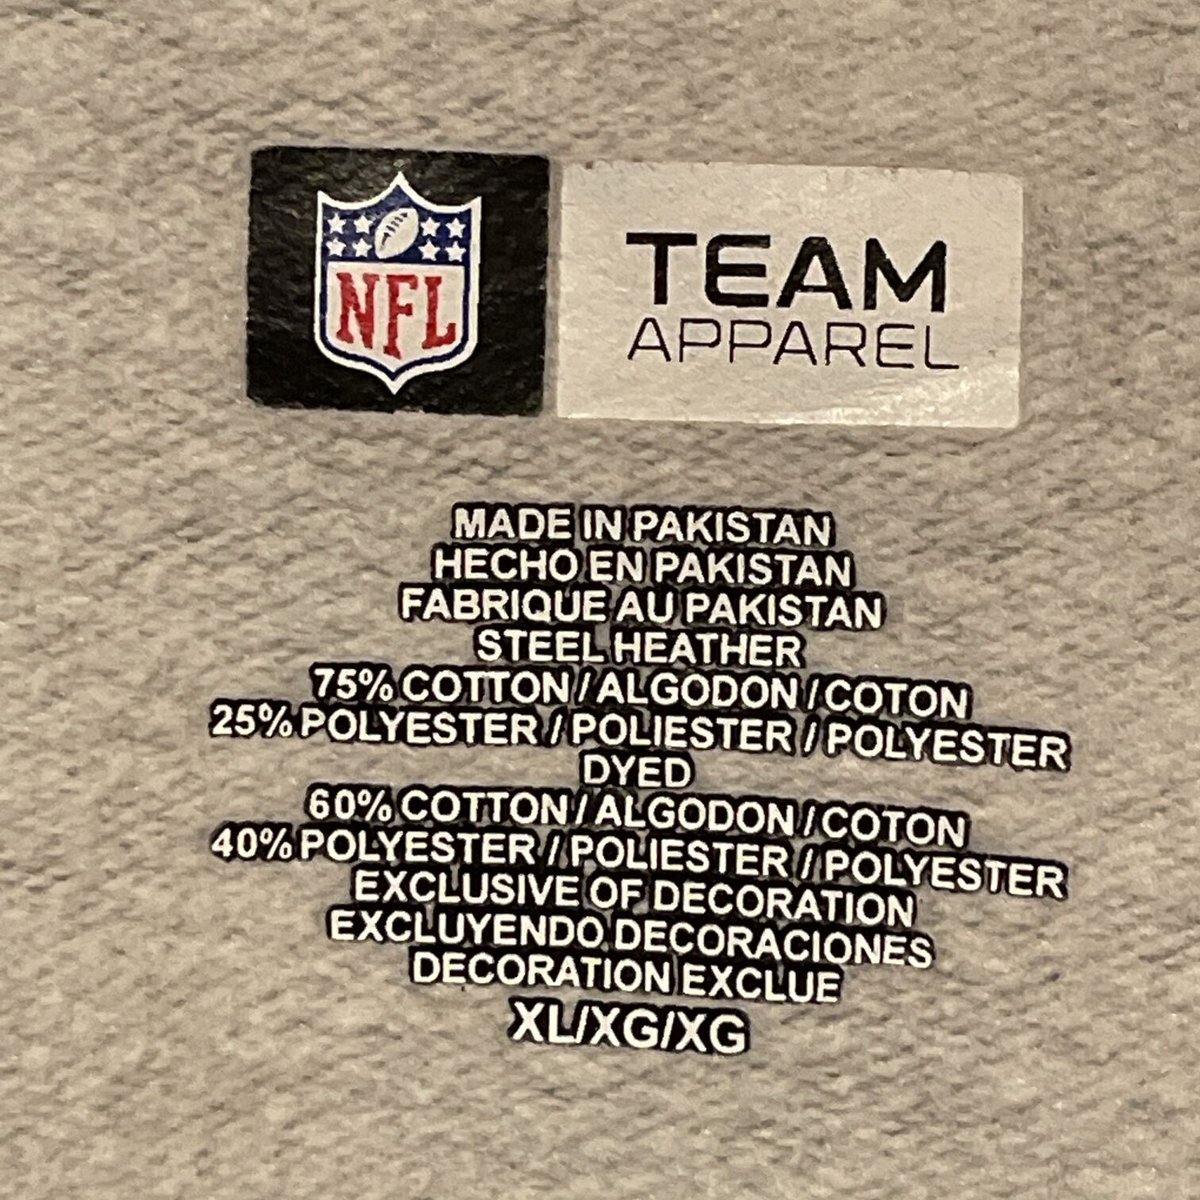 NFL TEAM APPAREL シカゴ・ベアーズ フルジップアップ パーカー A465 |